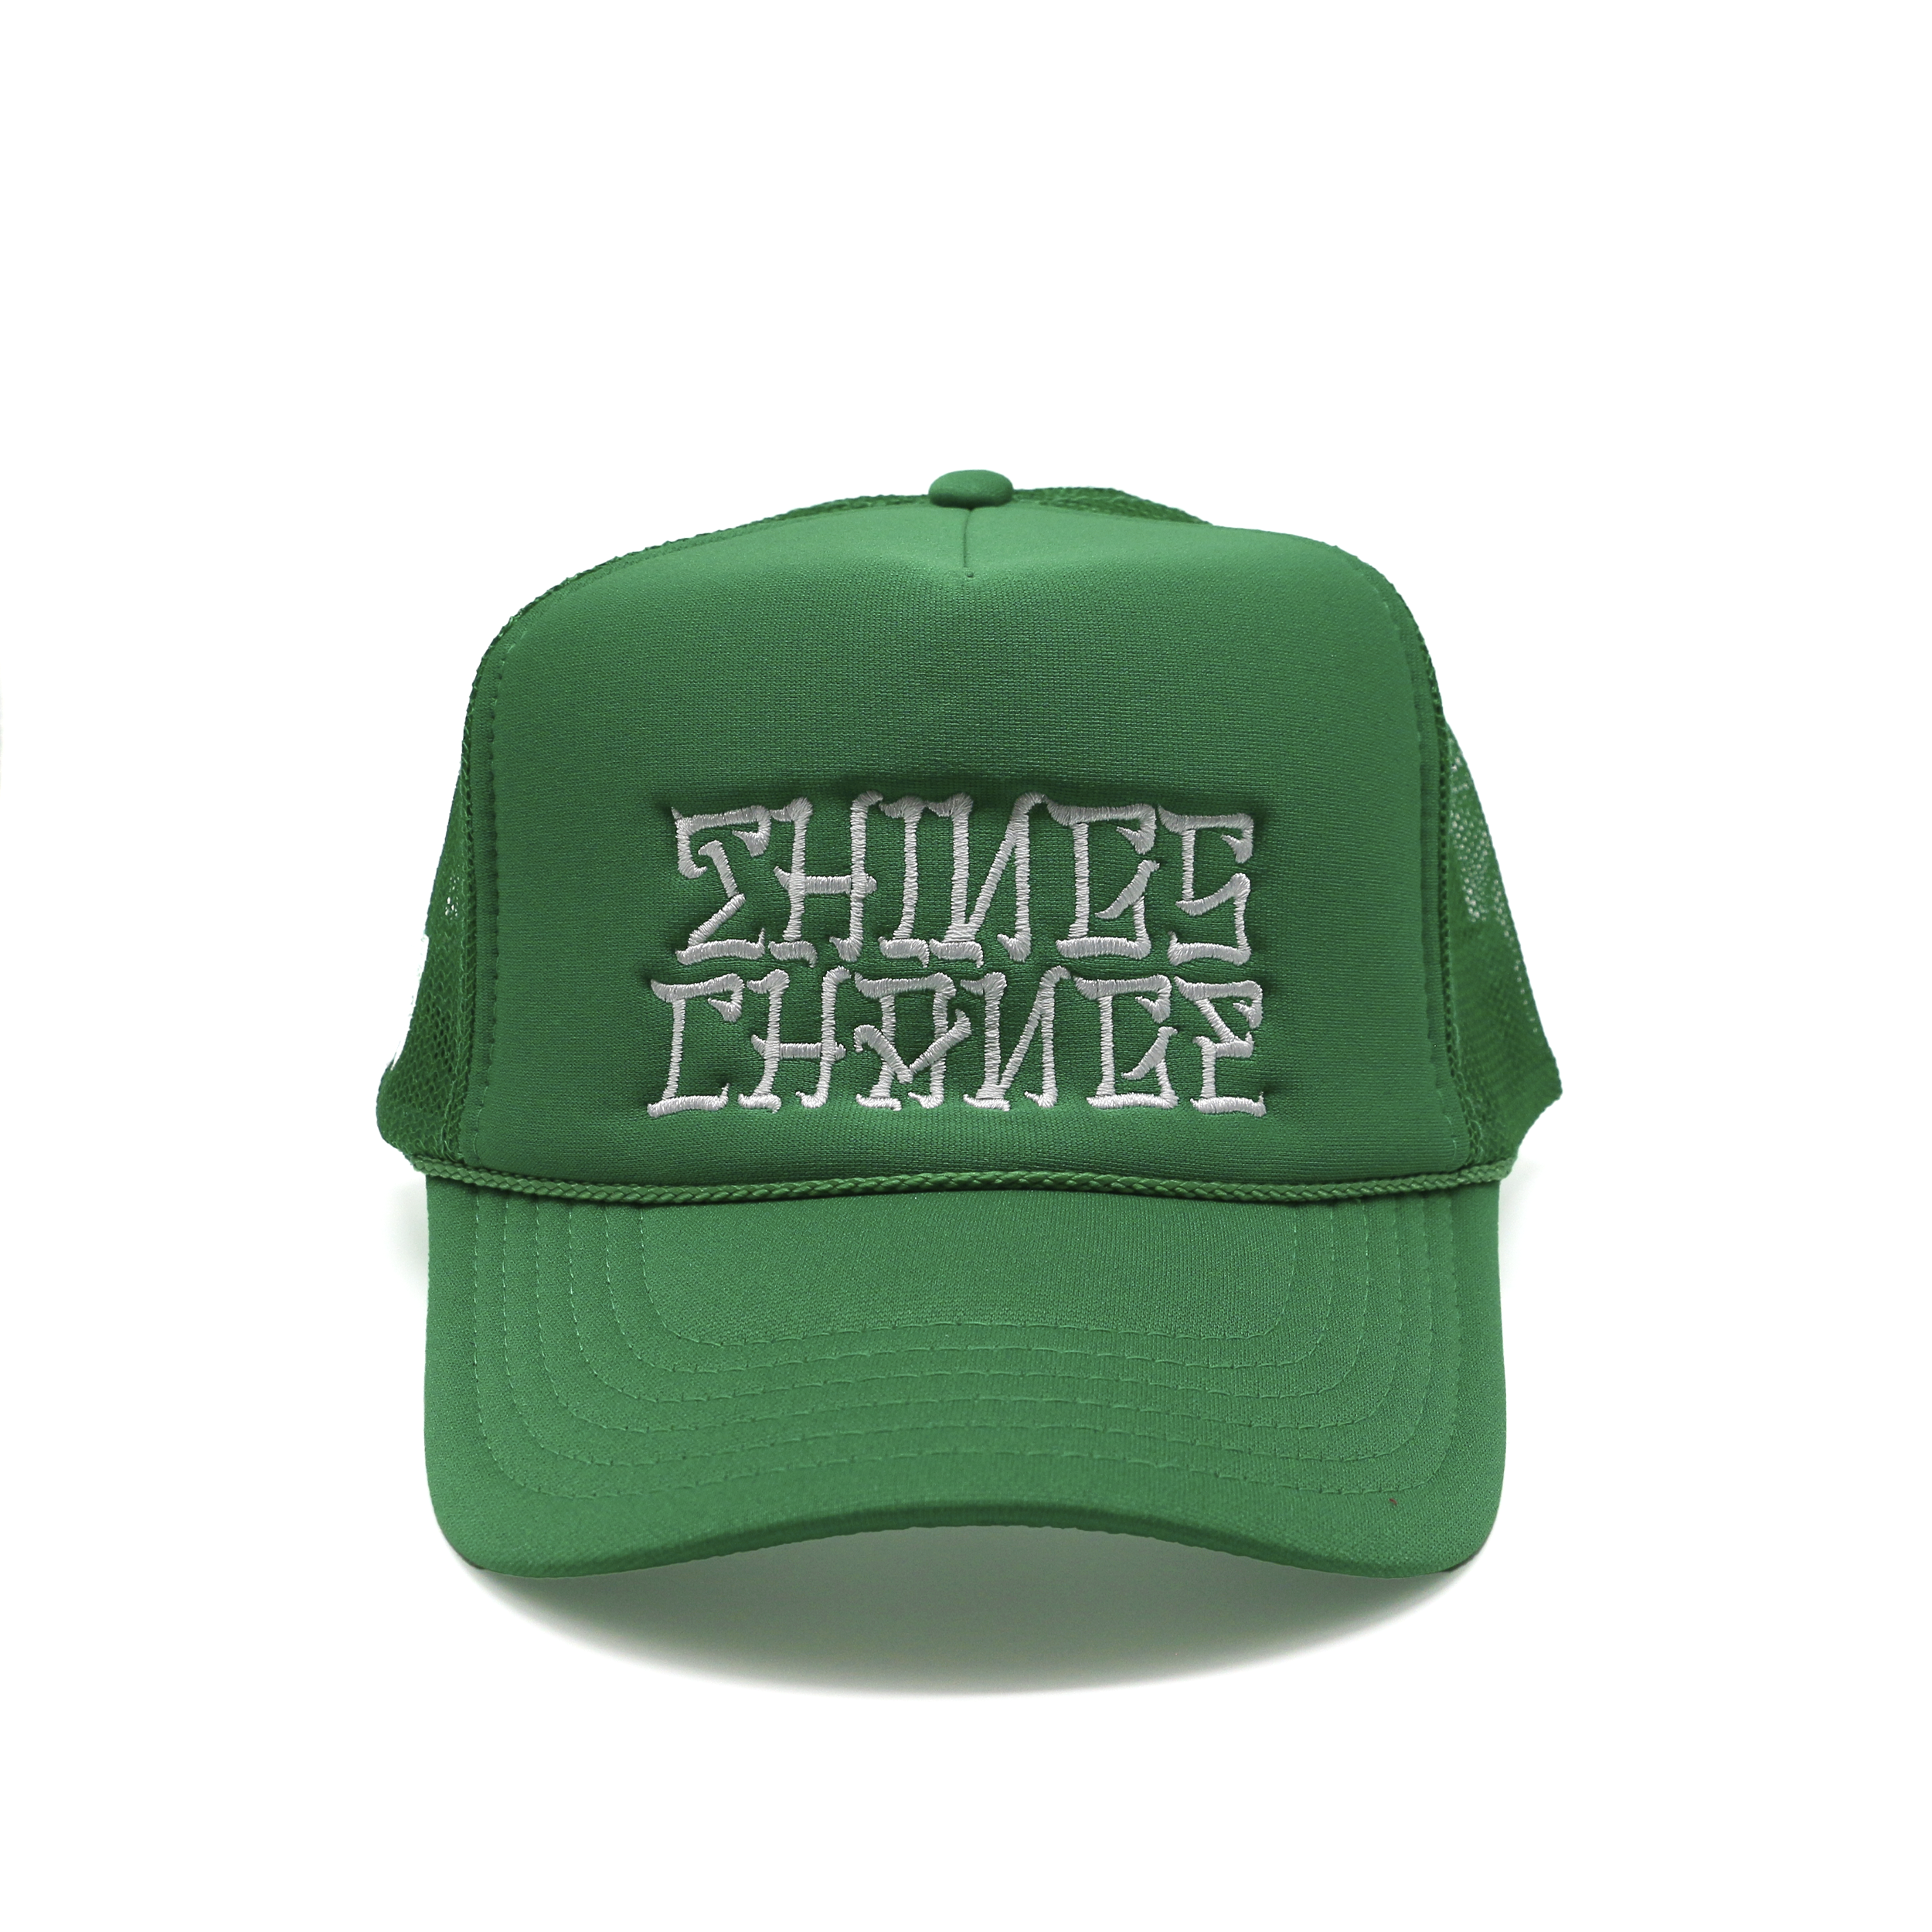 DKS "Things Change" Trucker Hat (Green/White)